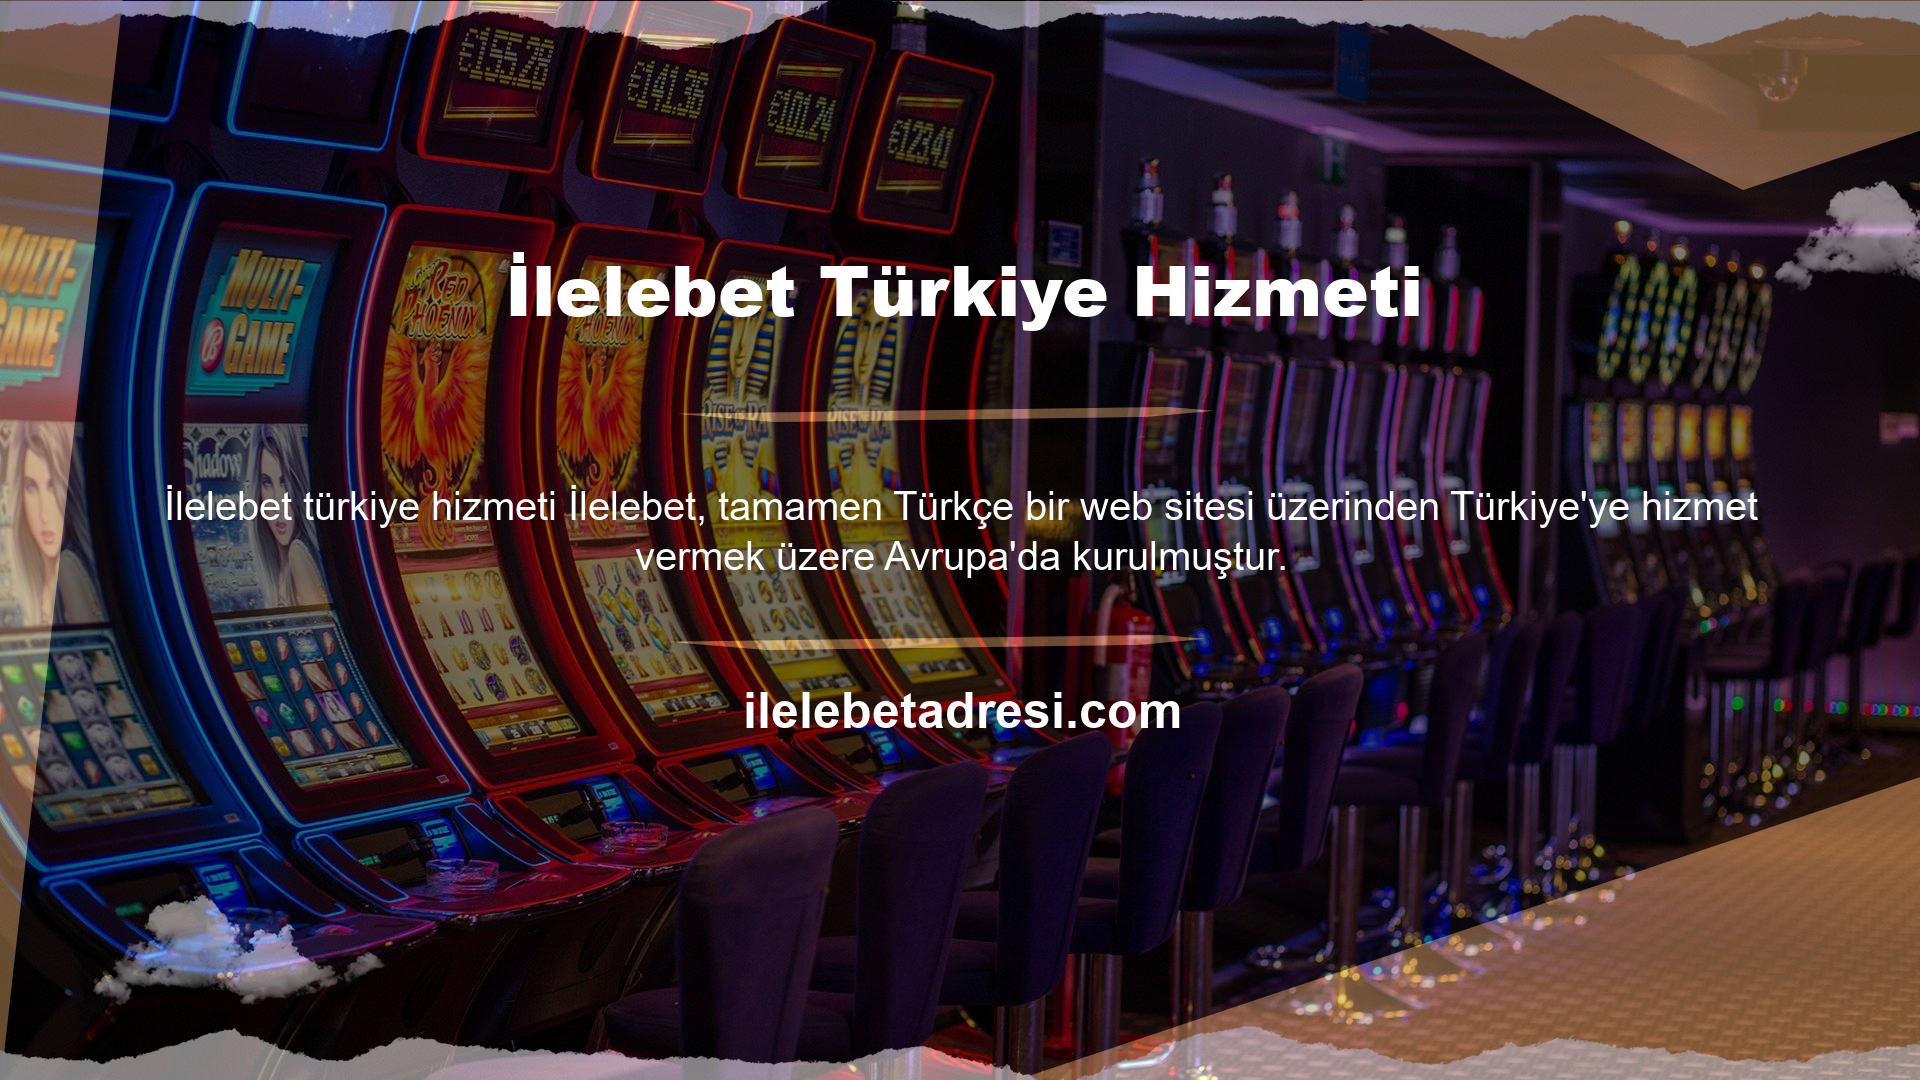 Bahisçiler yabancı dil kullanmakla pek ilgilenmezler ancak Türkiye'de kurulan İlelebet oyun siteleri bahis ve casino işlemleri için güvenlidir